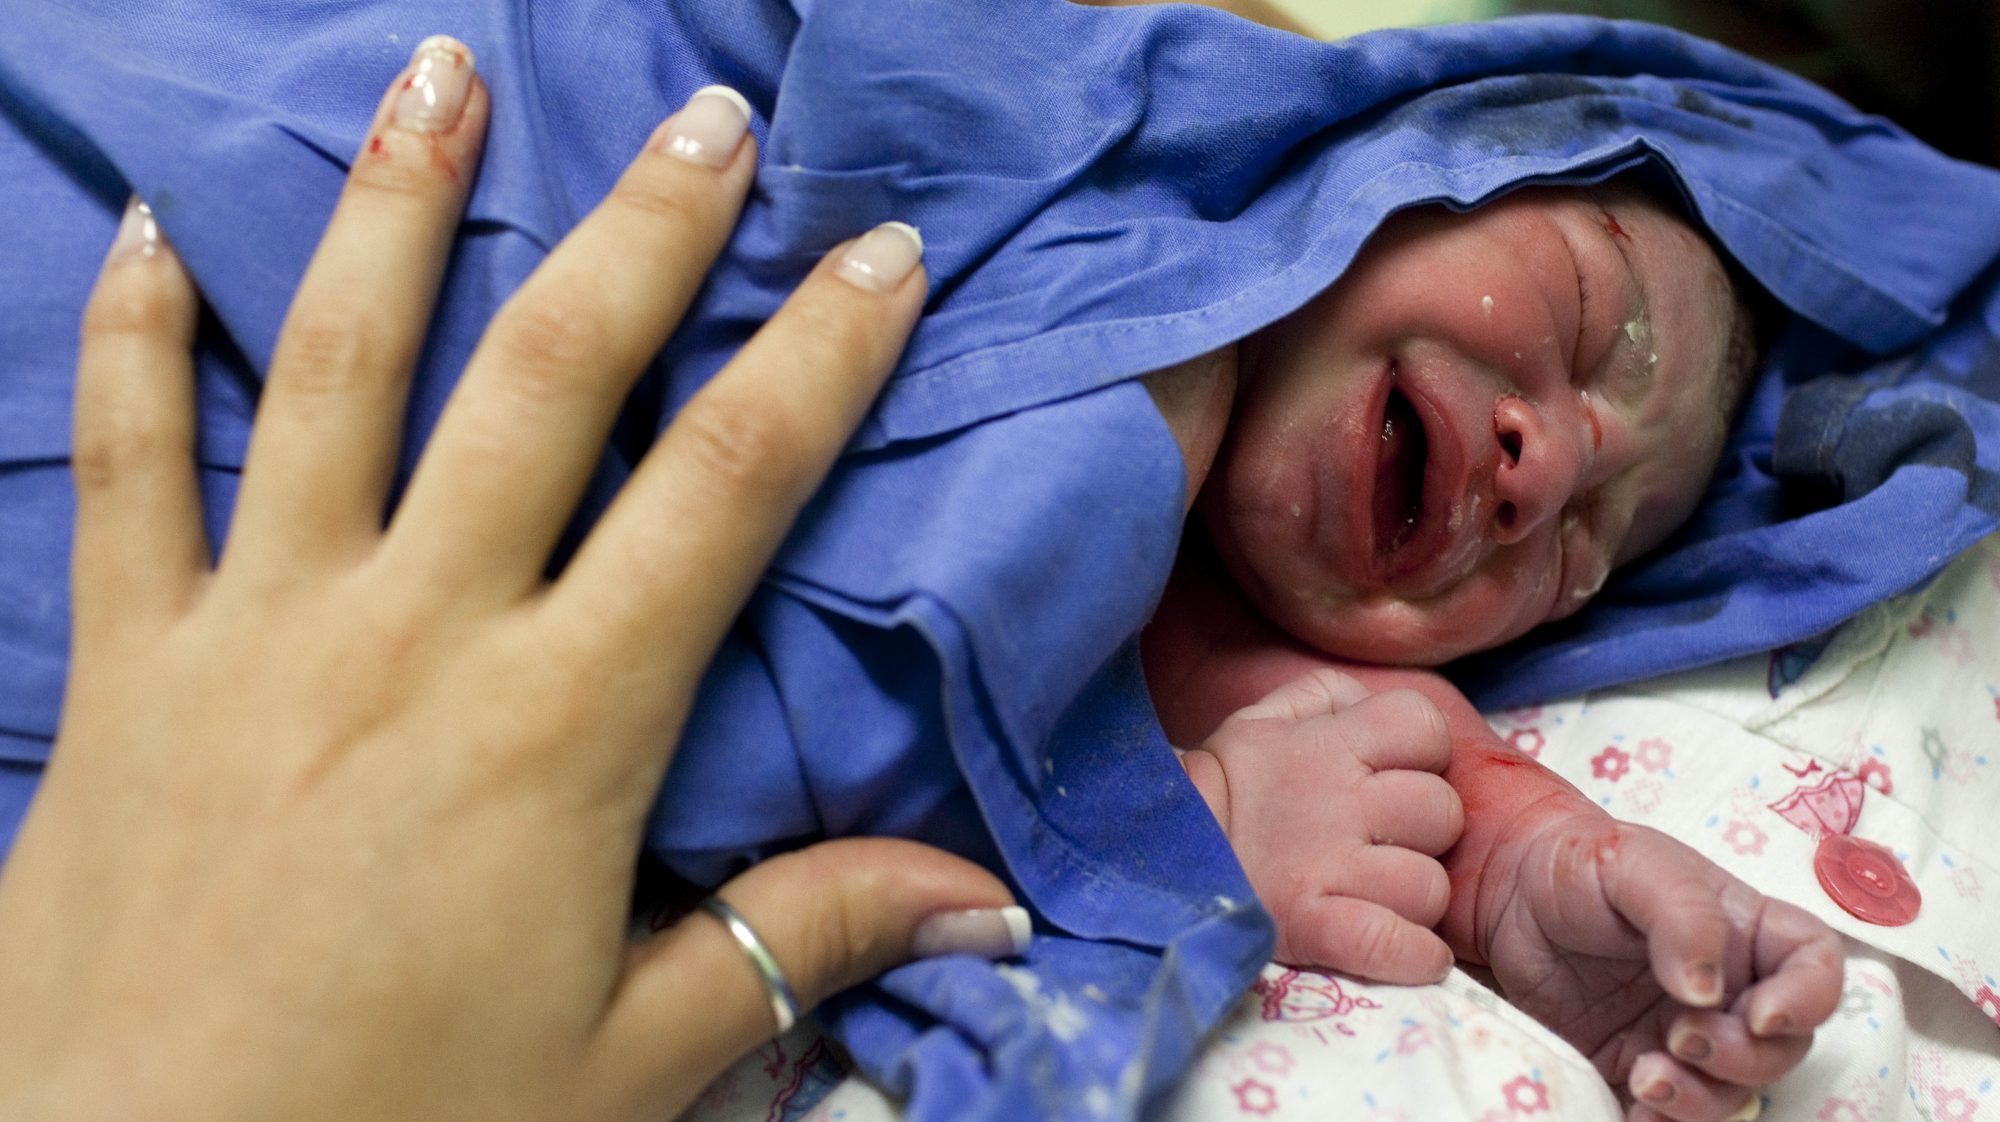 O INE revelou que em 2020 nasceram 84.426 crianças de mães residentes em Portugal, menos 2.153 crianças do que em 2019, o que significou uma redução de 2,5 por cento